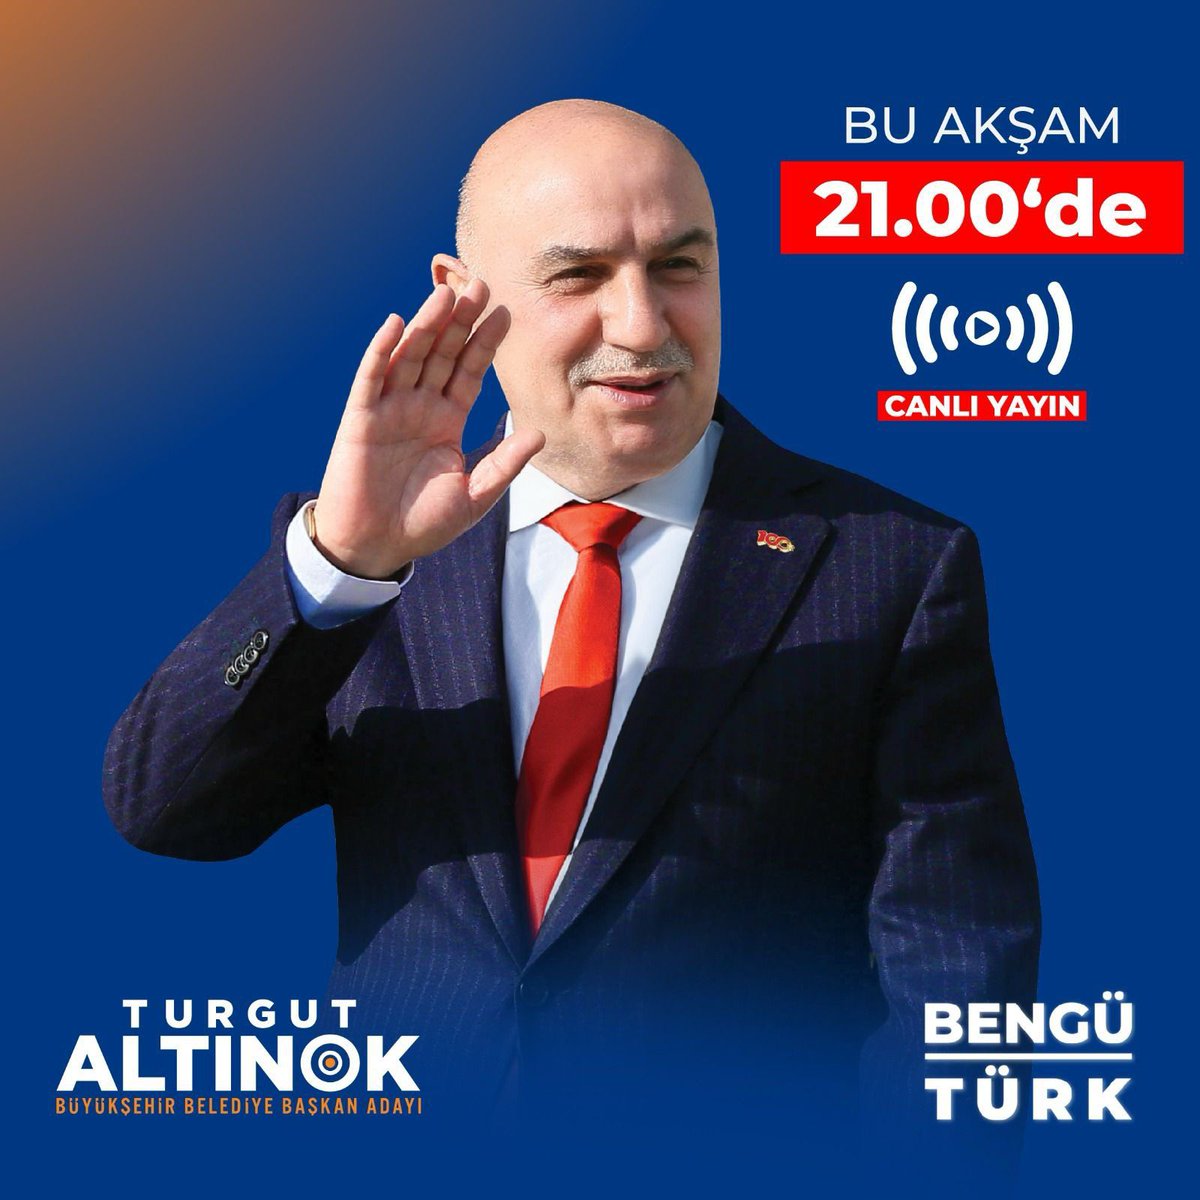 Cumhur İttifakı ABB Başkan Adayı Turgut Altınok bu akşam saat 21.00'de BENGÜ TÜRK ekranlarında Ankara'ya dair projeleri hakkında açıklamalarda bulunacak, merak edilenleri cevaplayacak. #HızlanmaZamanı